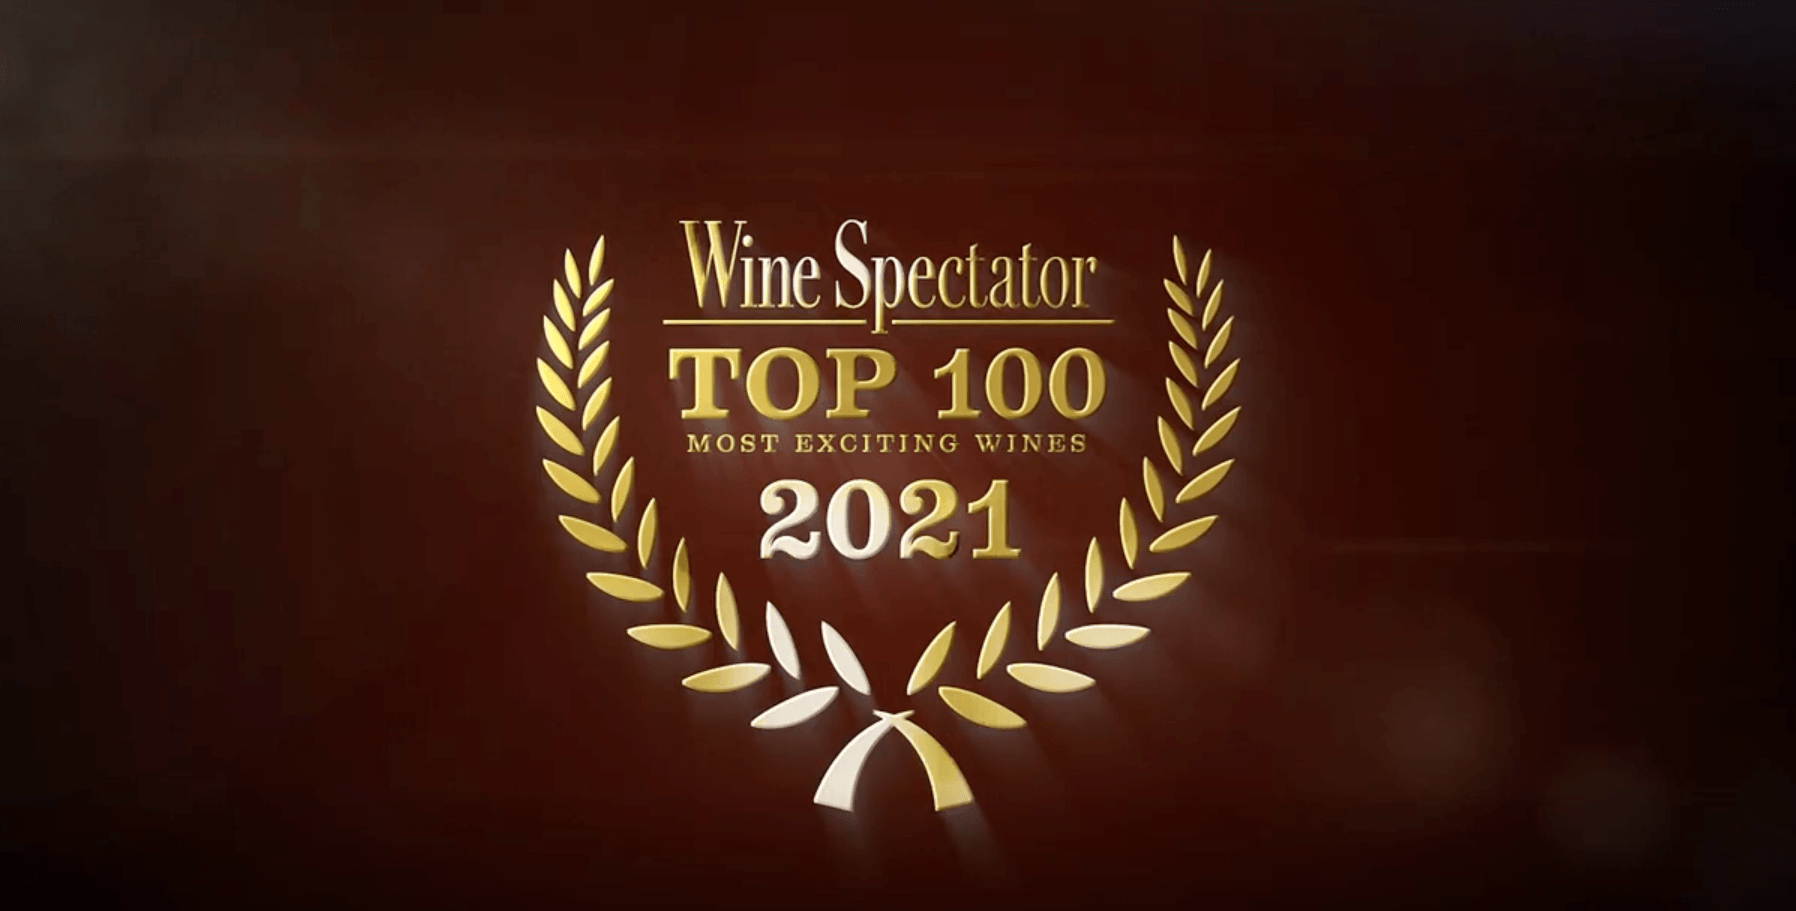 Léoville Poyferré 2018 earned the #7 ranking in Wine Spectator’s Top 100 wines of 2021 - Léoville Poyferré